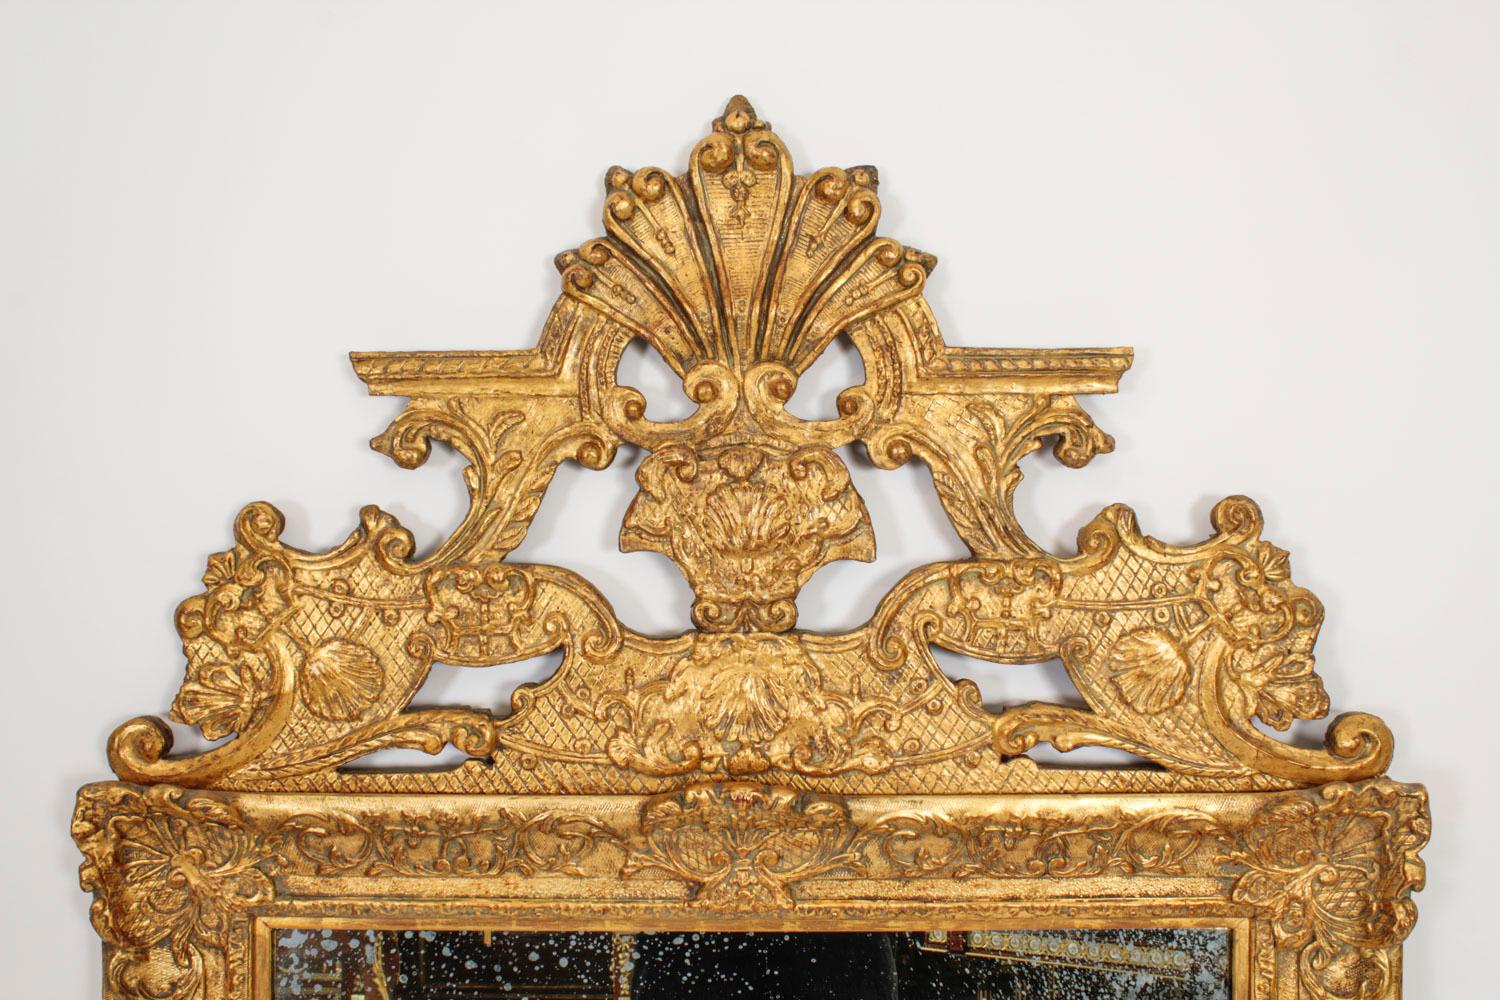 Il s'agit d'un grand et impressionnant miroir mural en bois doré et gesso sculpté de style Louis XIV, datant de 1760 environ.

Le cadre est surmonté d'un fleuron central en bois doré, sculpté et ajouré, avec un décor de coquillages, de feuilles